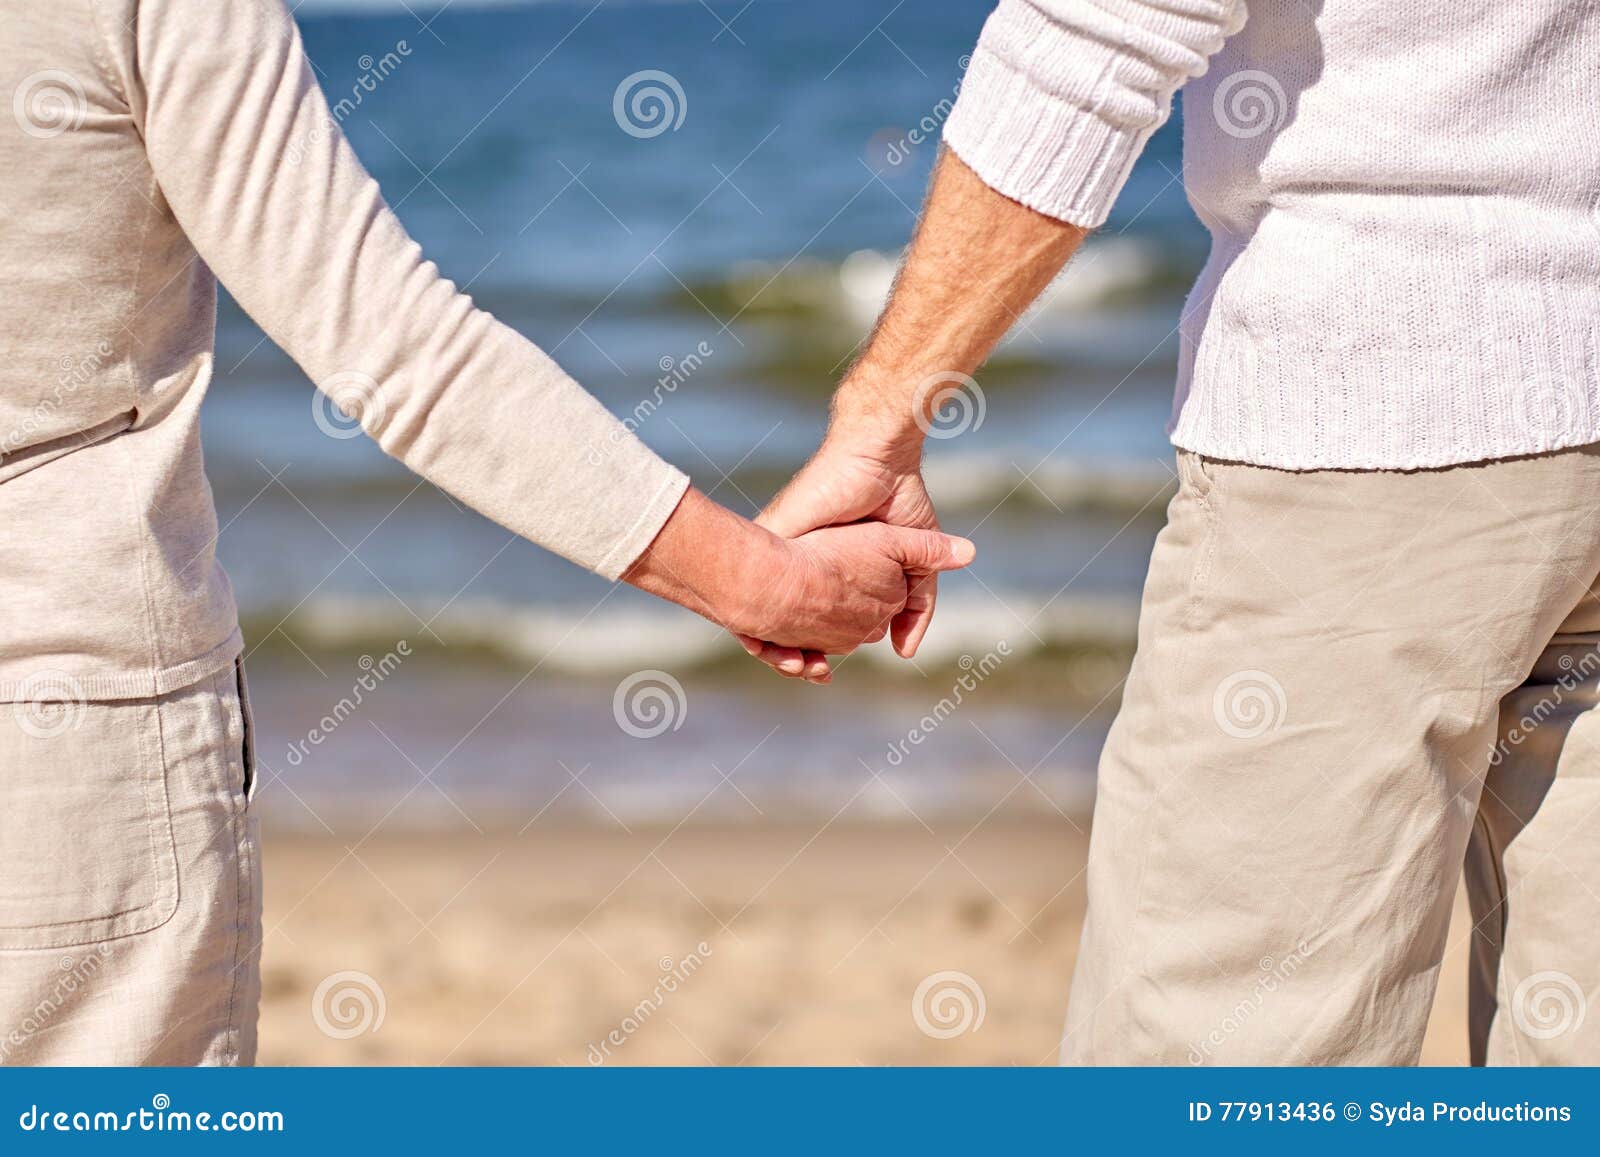 Пожилые держатся за руки. Пожилые люди держатся за руки. Пожилая пара держится за руки. Руки пожилых влюбленных. Пожилые люди взявшиеся за руки.